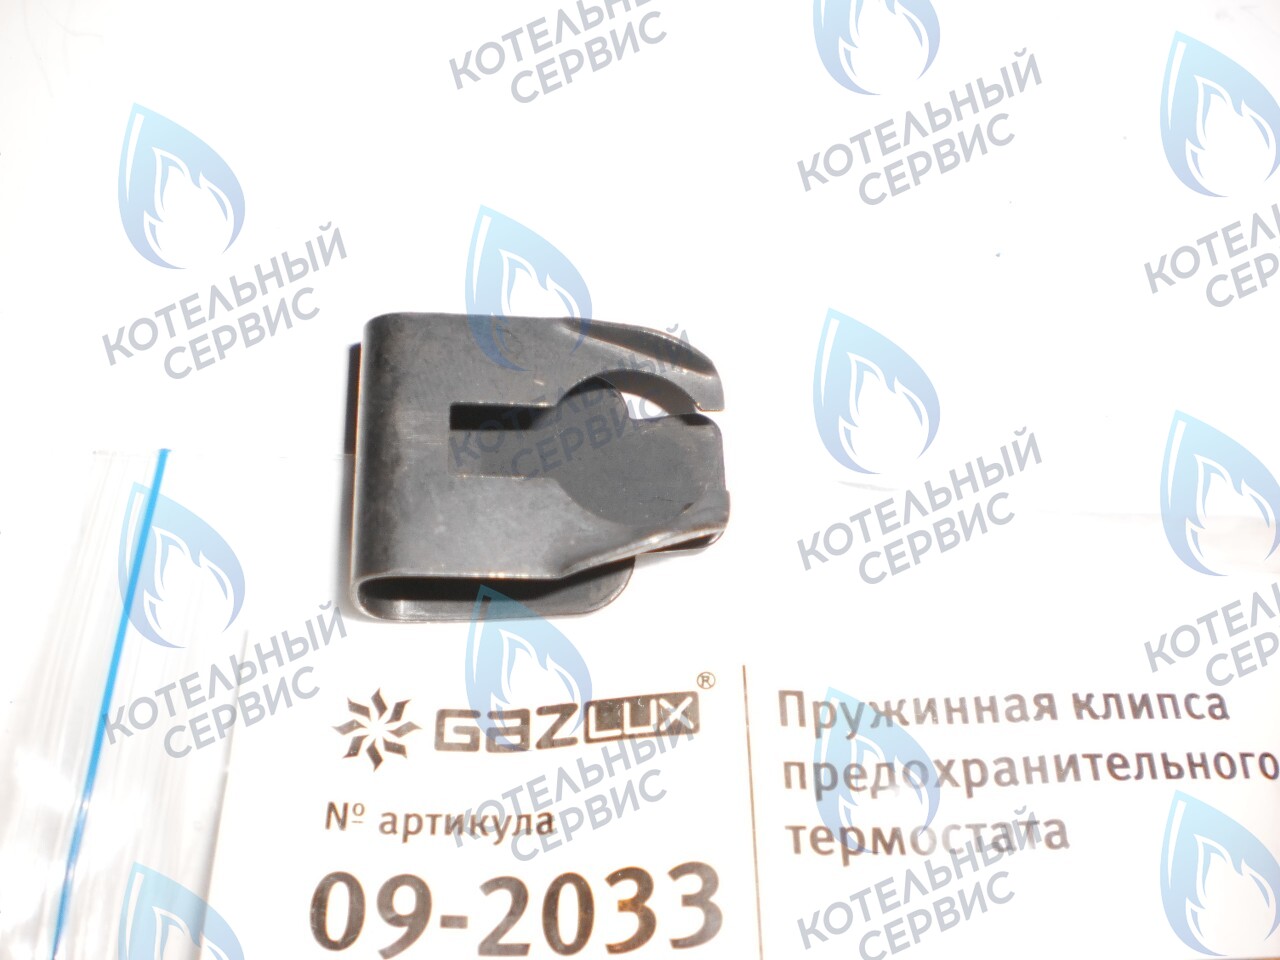 09-2033 Пружинная клипса предохранительного термостата (09-2033) GAZLUX 